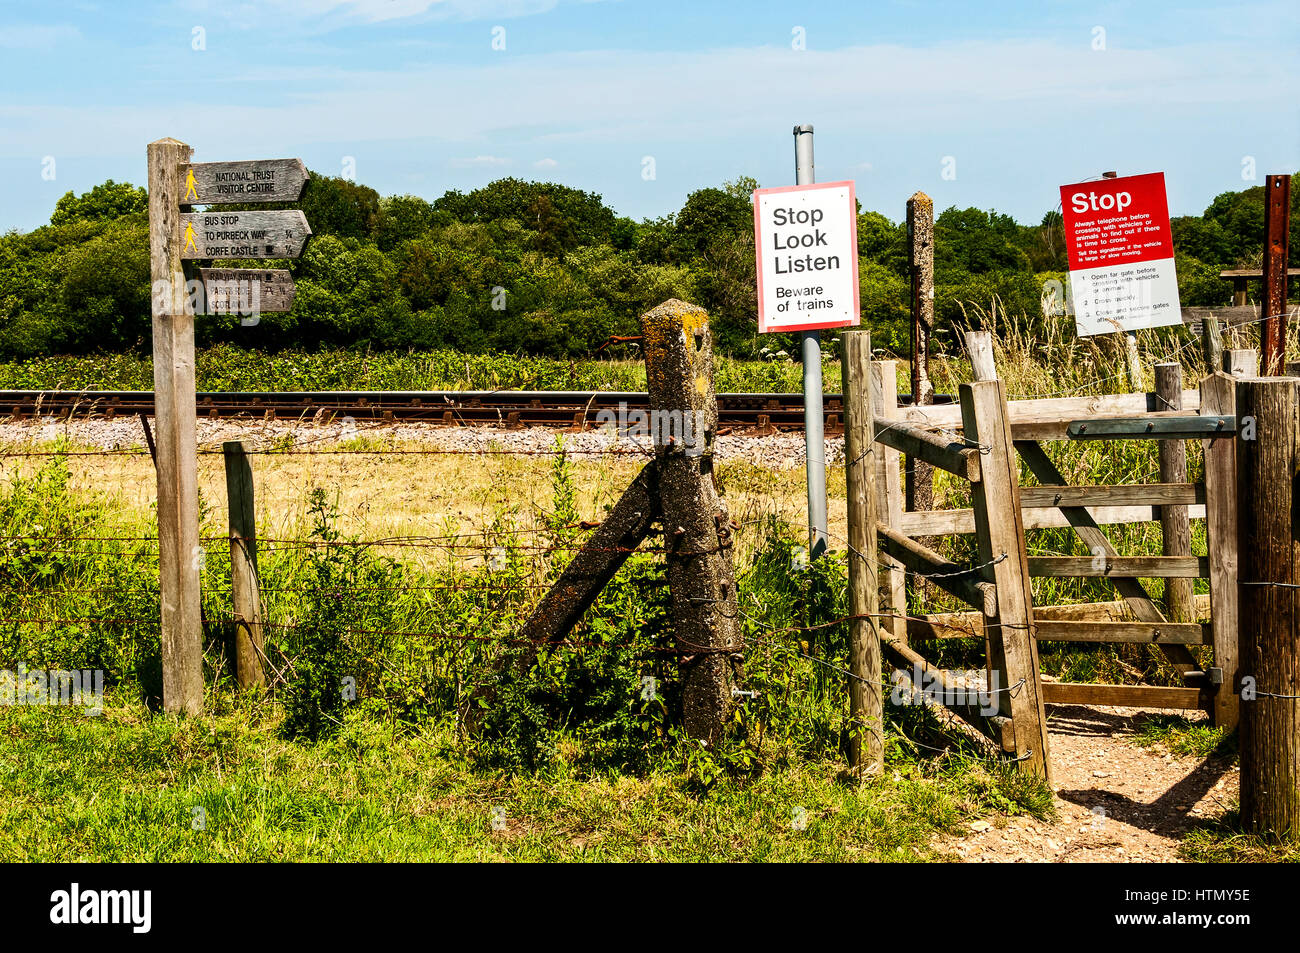 Un passage pour piétons à travers bois gated lignes de chemin de fer entièrement complétées par des panneaux de direction et d'avertissement dans la campagne anglaise sunkissed chaud Banque D'Images